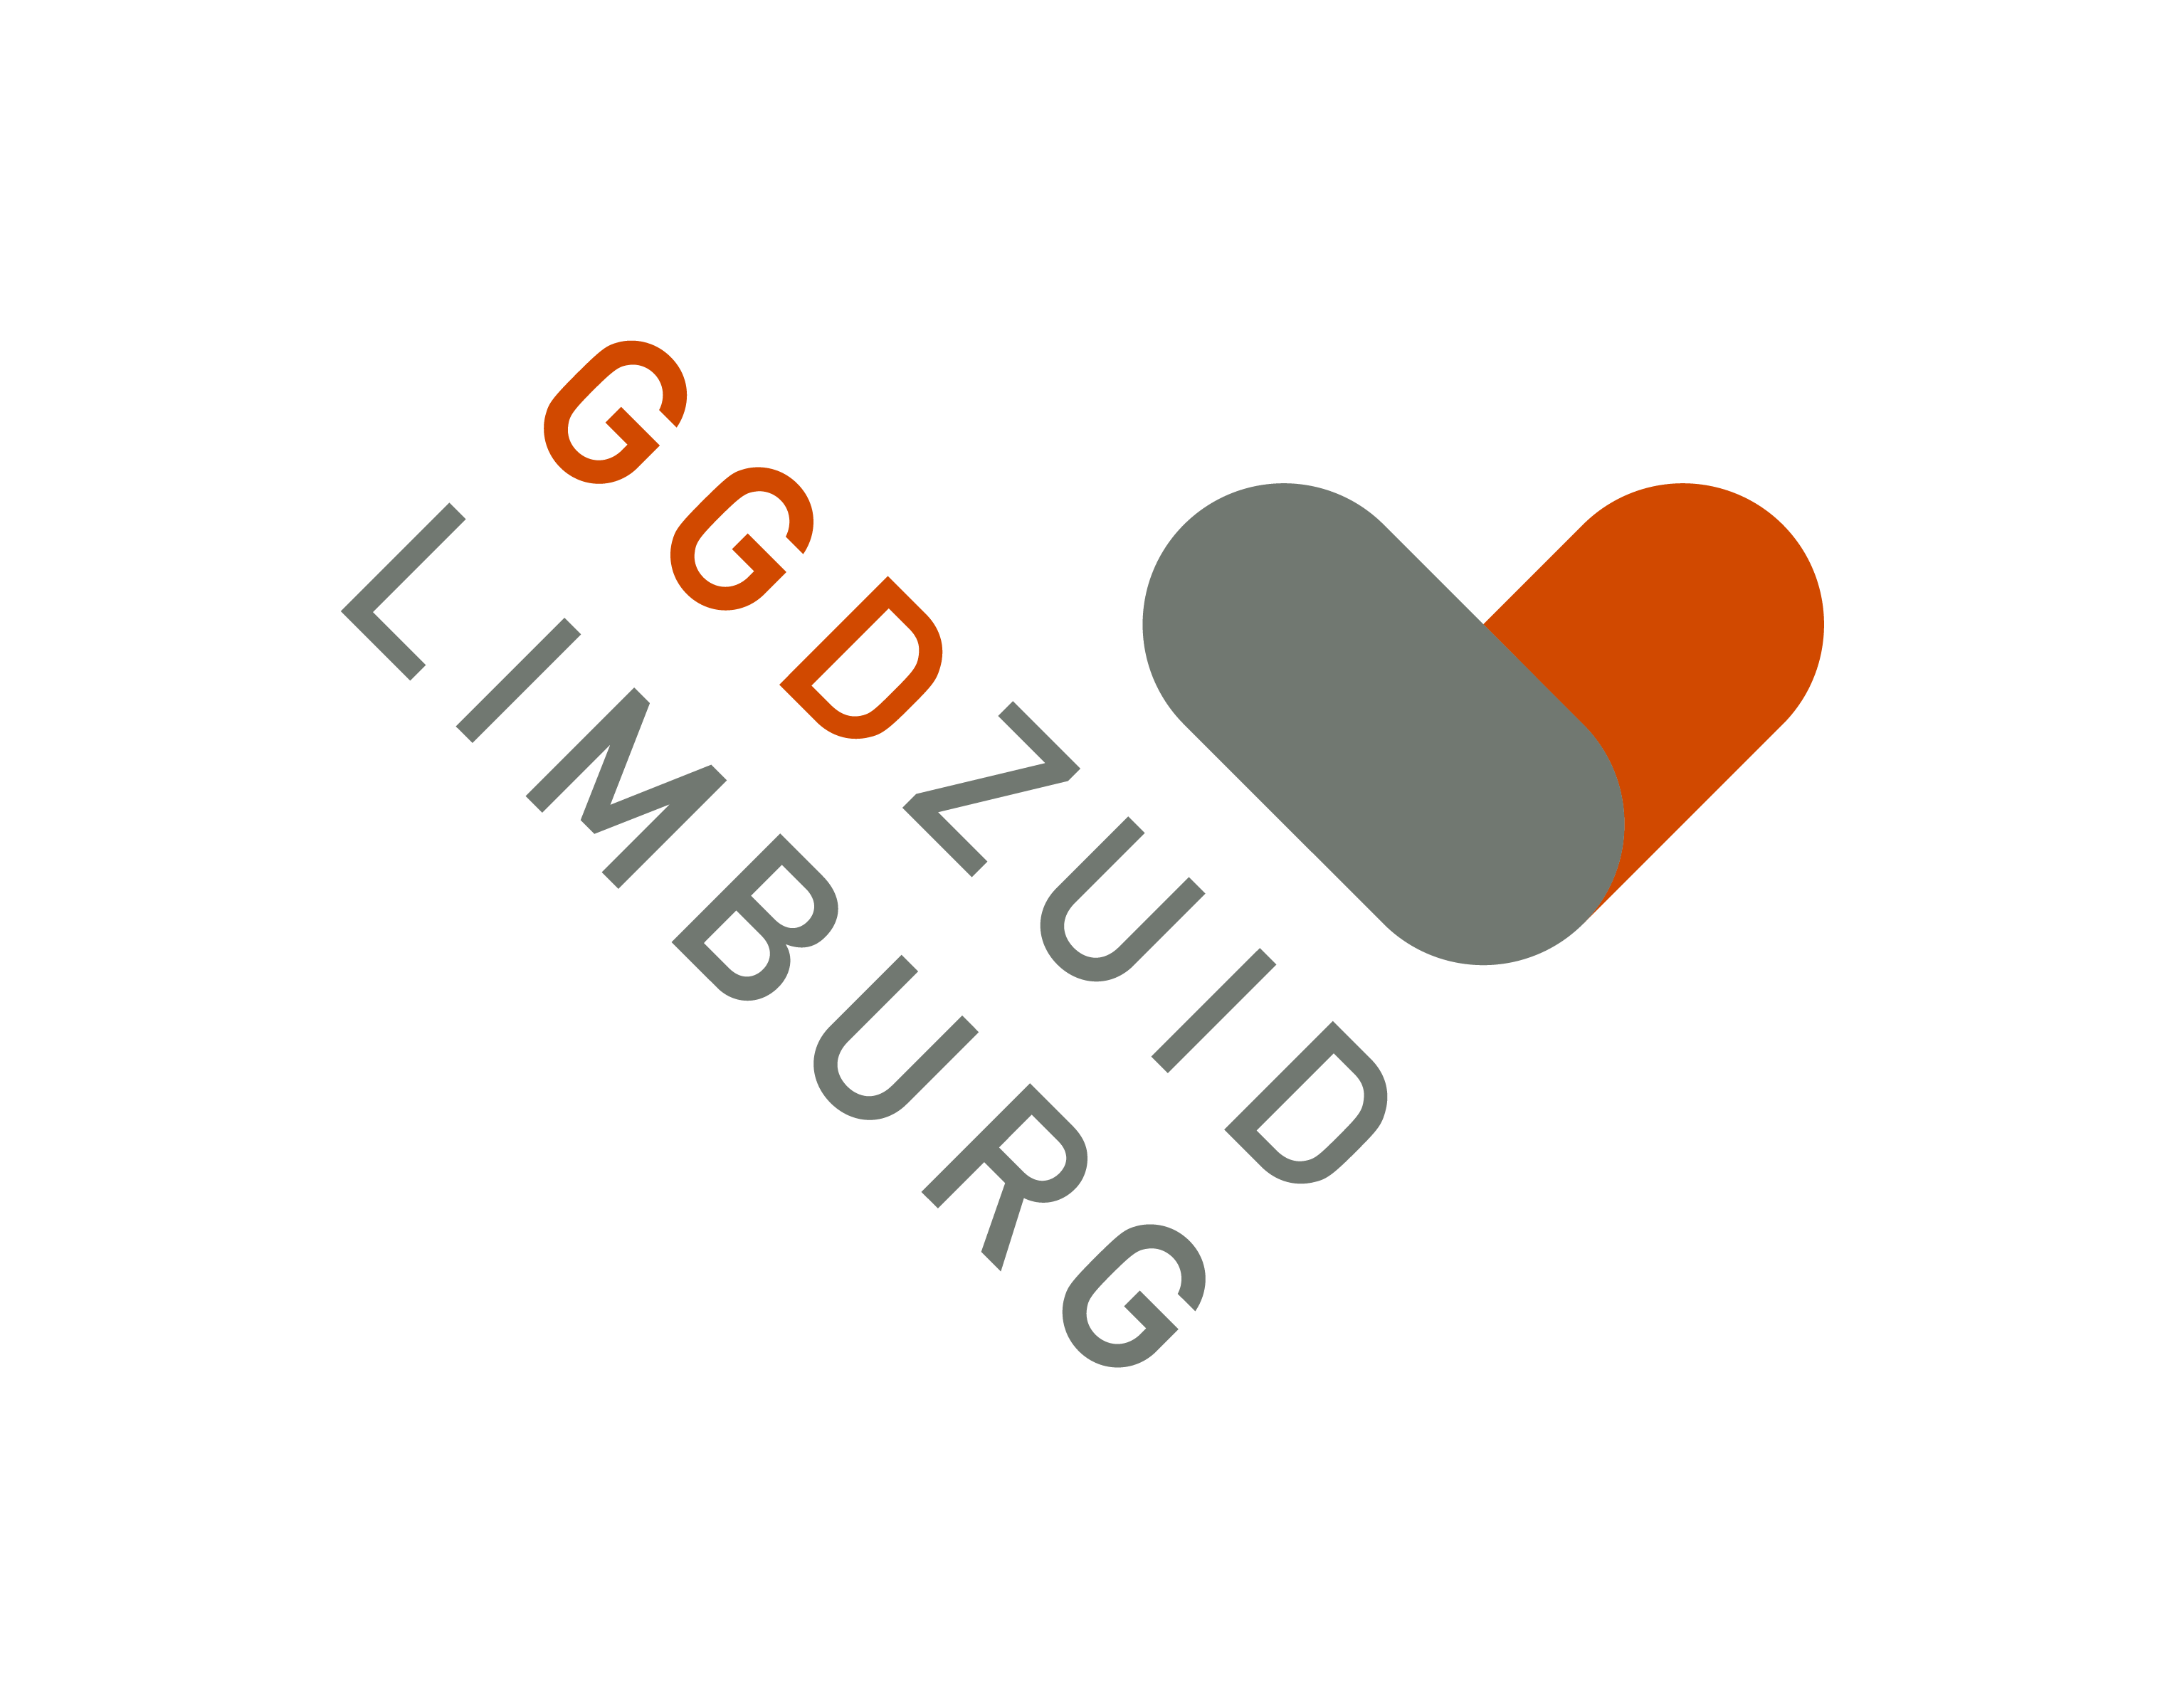 Het logo van GGD Zuid-Limburg met diagonale tekst GGD Zuid-Limburg. 